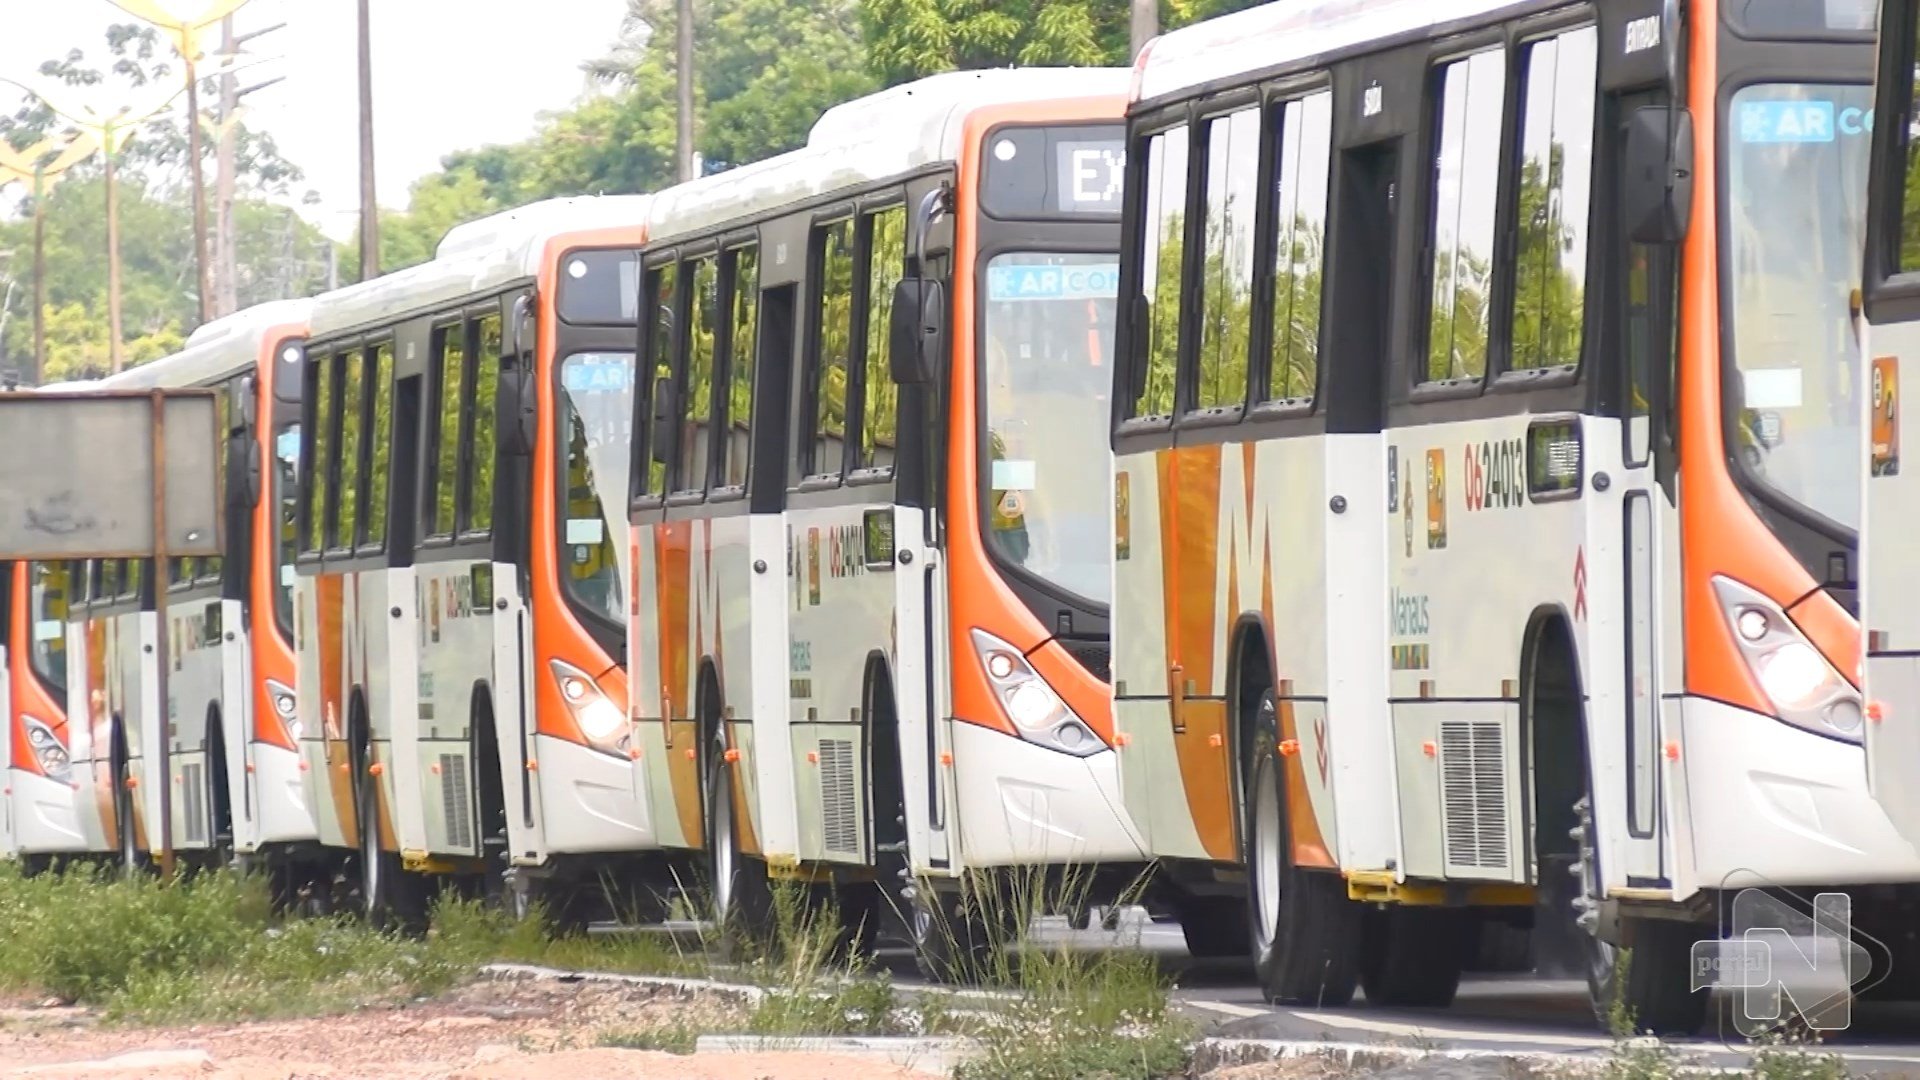 Transporte público de Manaus ganhou 15 novos ônibus para a frota – Foto: Reprodução/TV Norte Amazonas